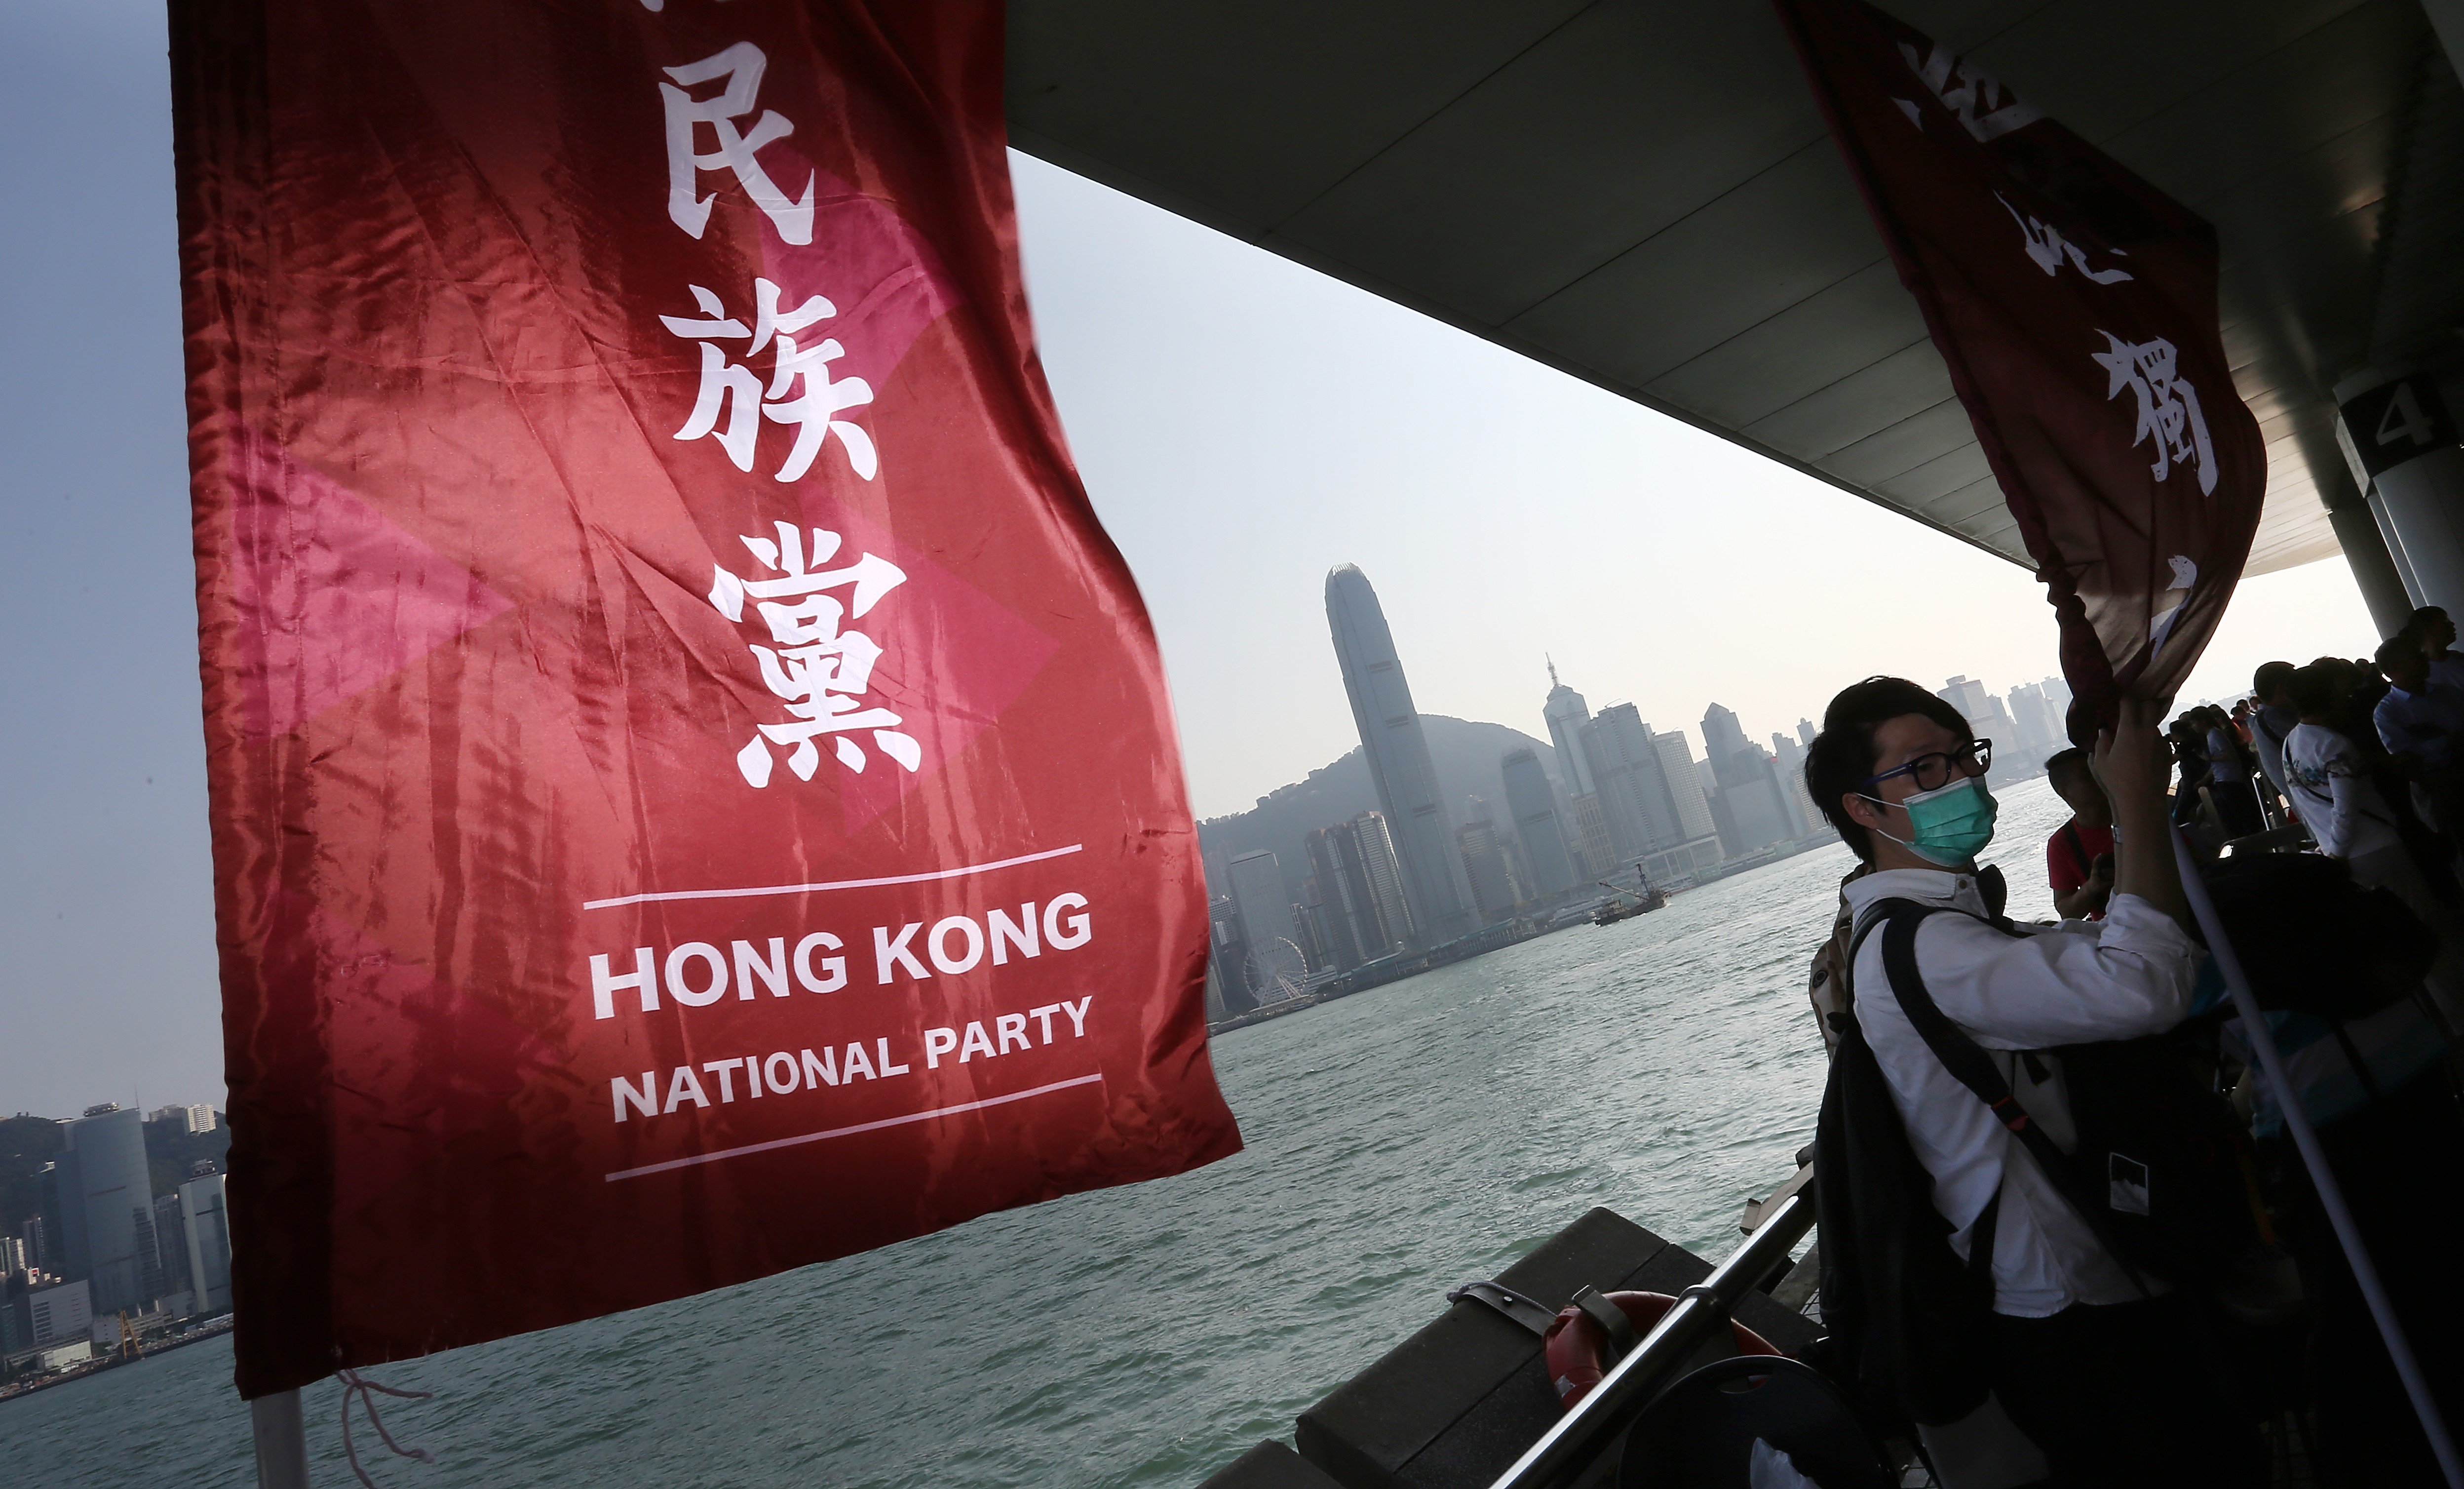 The Hong Kong National Party was banned last year. Photo: Jonathan Wong